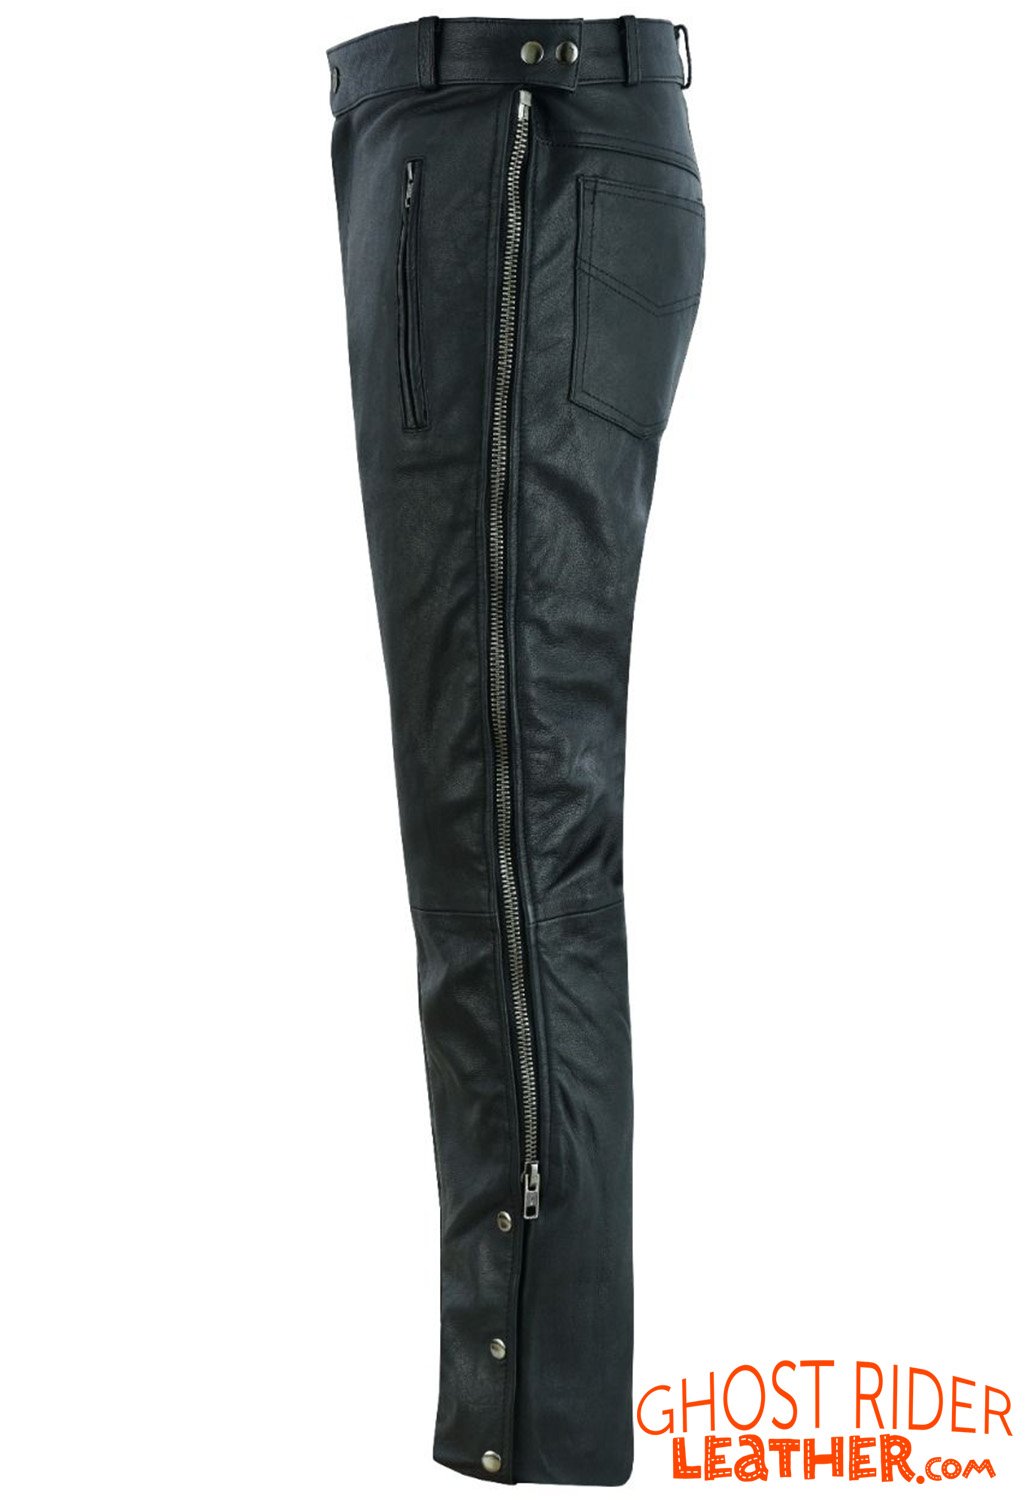 Leather Chap Pants - Men's - Zipper Pockets - Motorcycle - C1001-11-DL